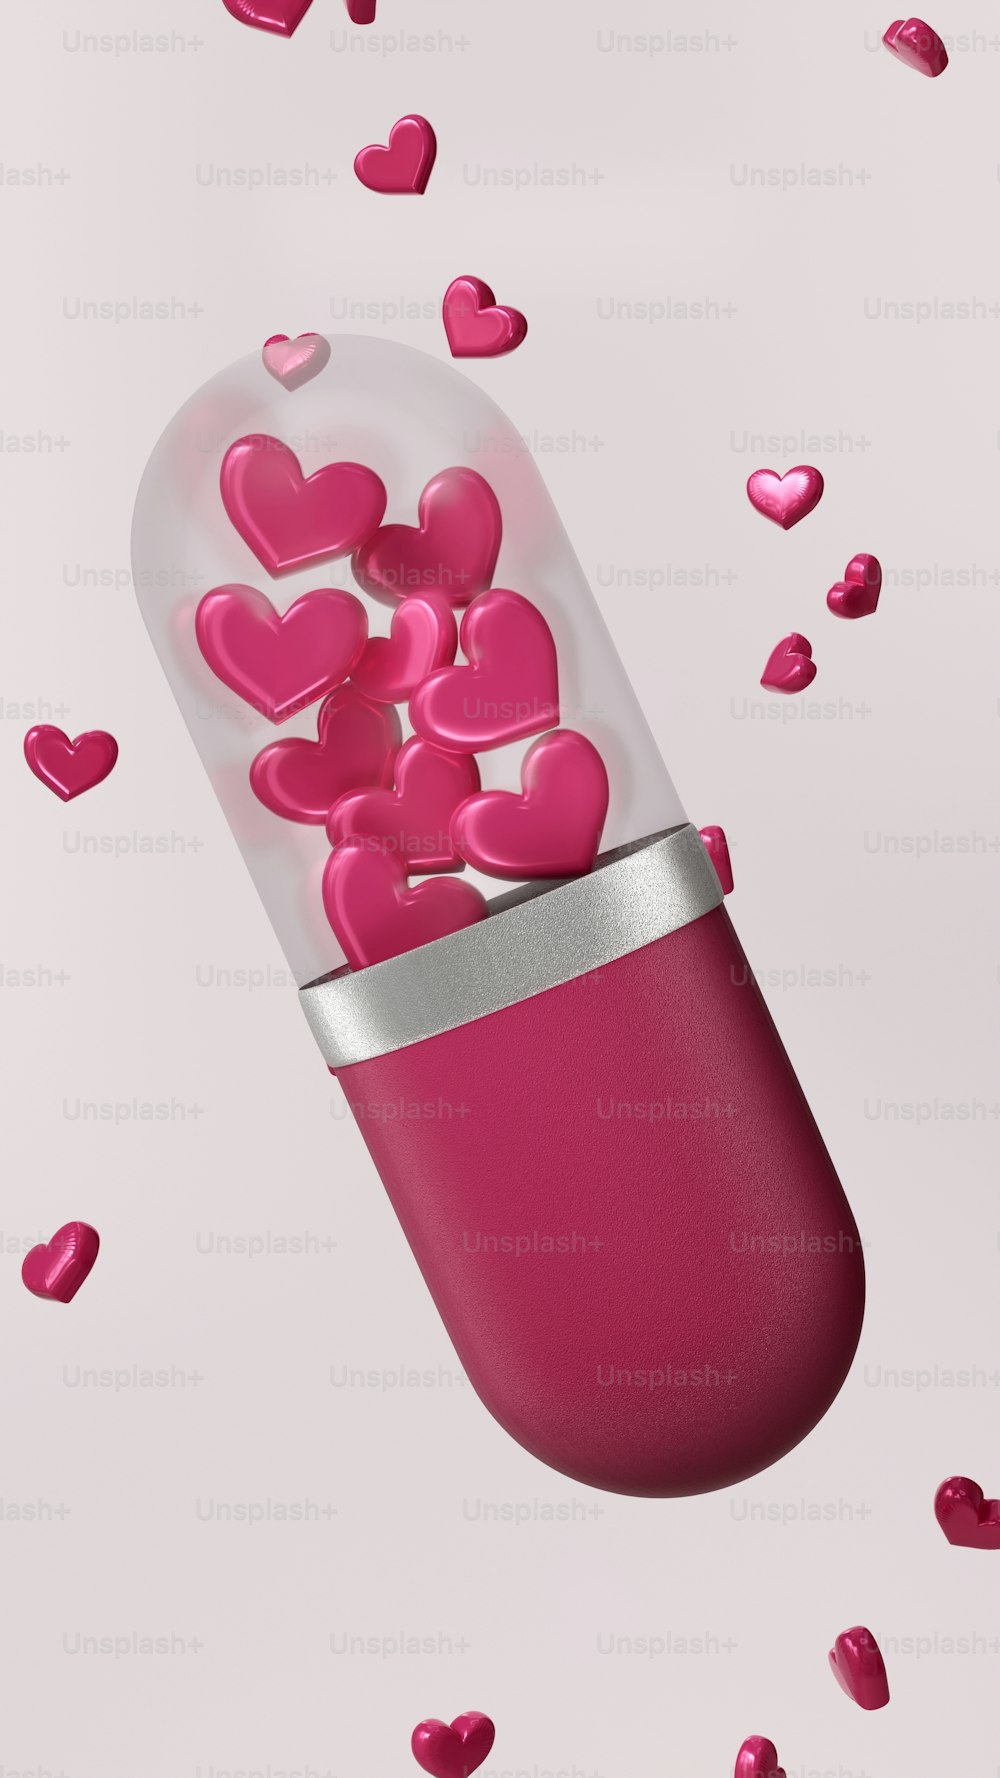 Una píldora rosa llena de corazones rosados sobre un fondo rosa